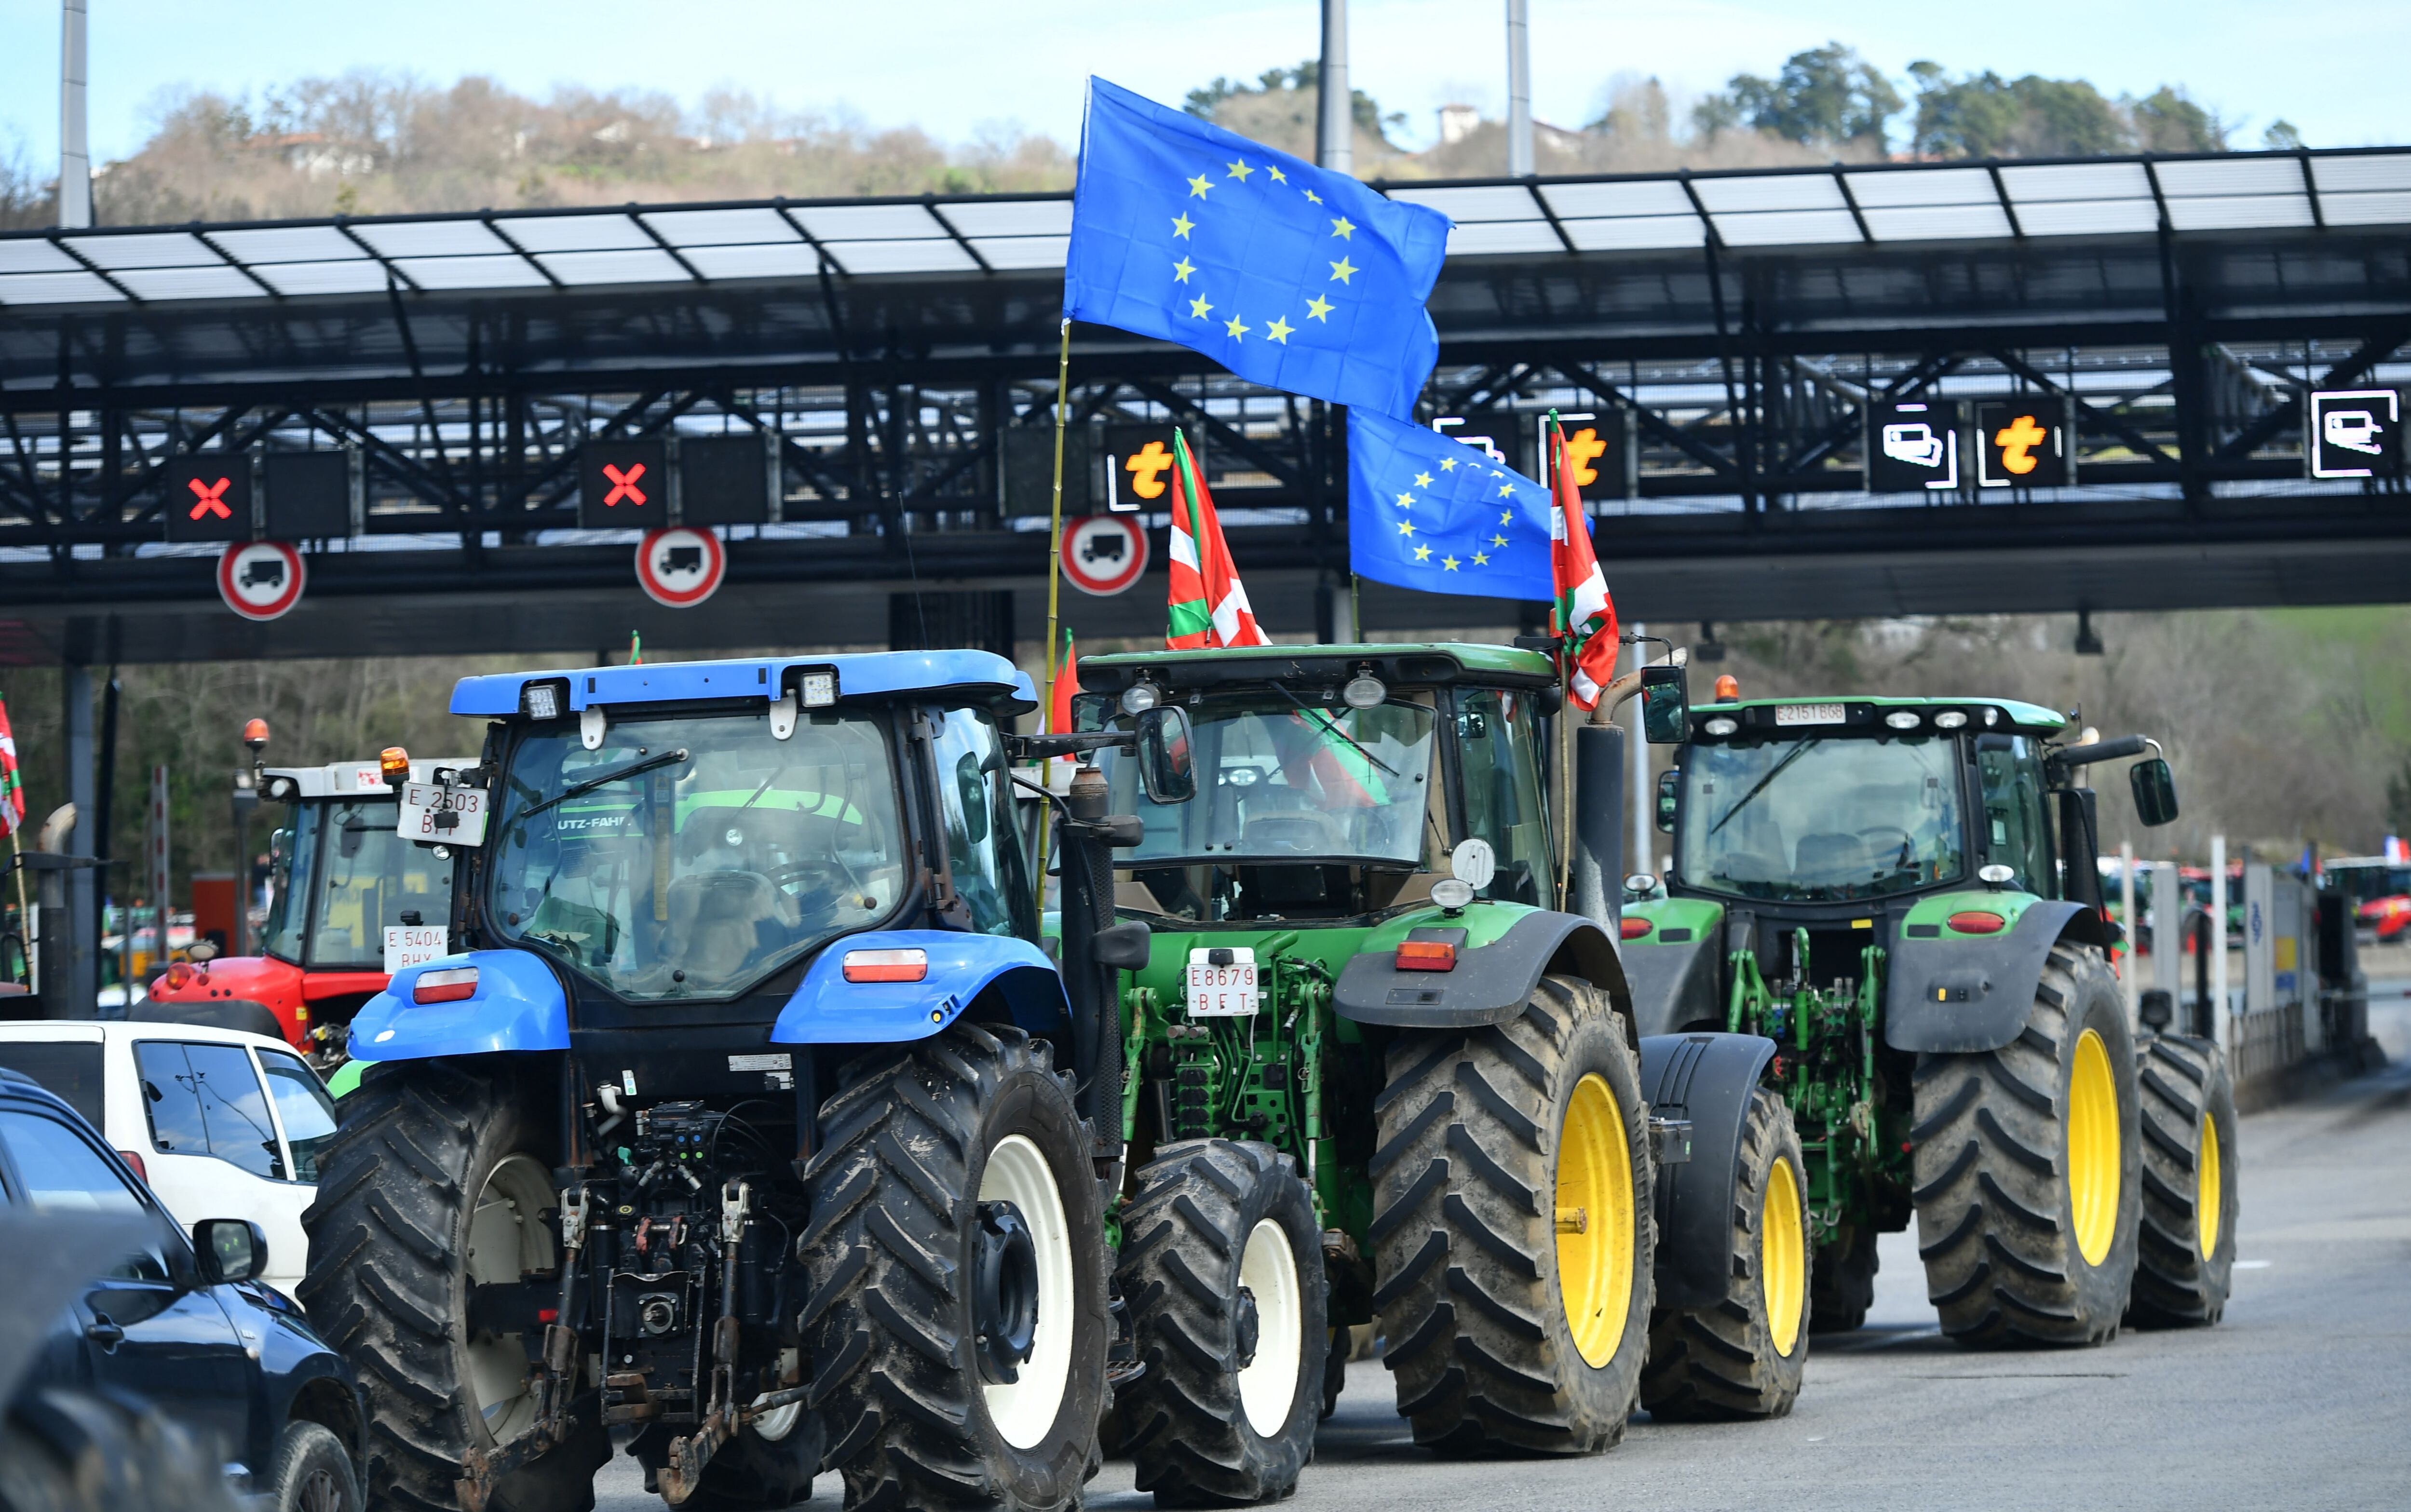 La Unión Europea propuso una flexibilización de las normas ecológicas de la Política Agrícola Común (PAC), que fue aprobada en abril. En meses anteriores los agricultores de varios países han protestado por estas medidas.